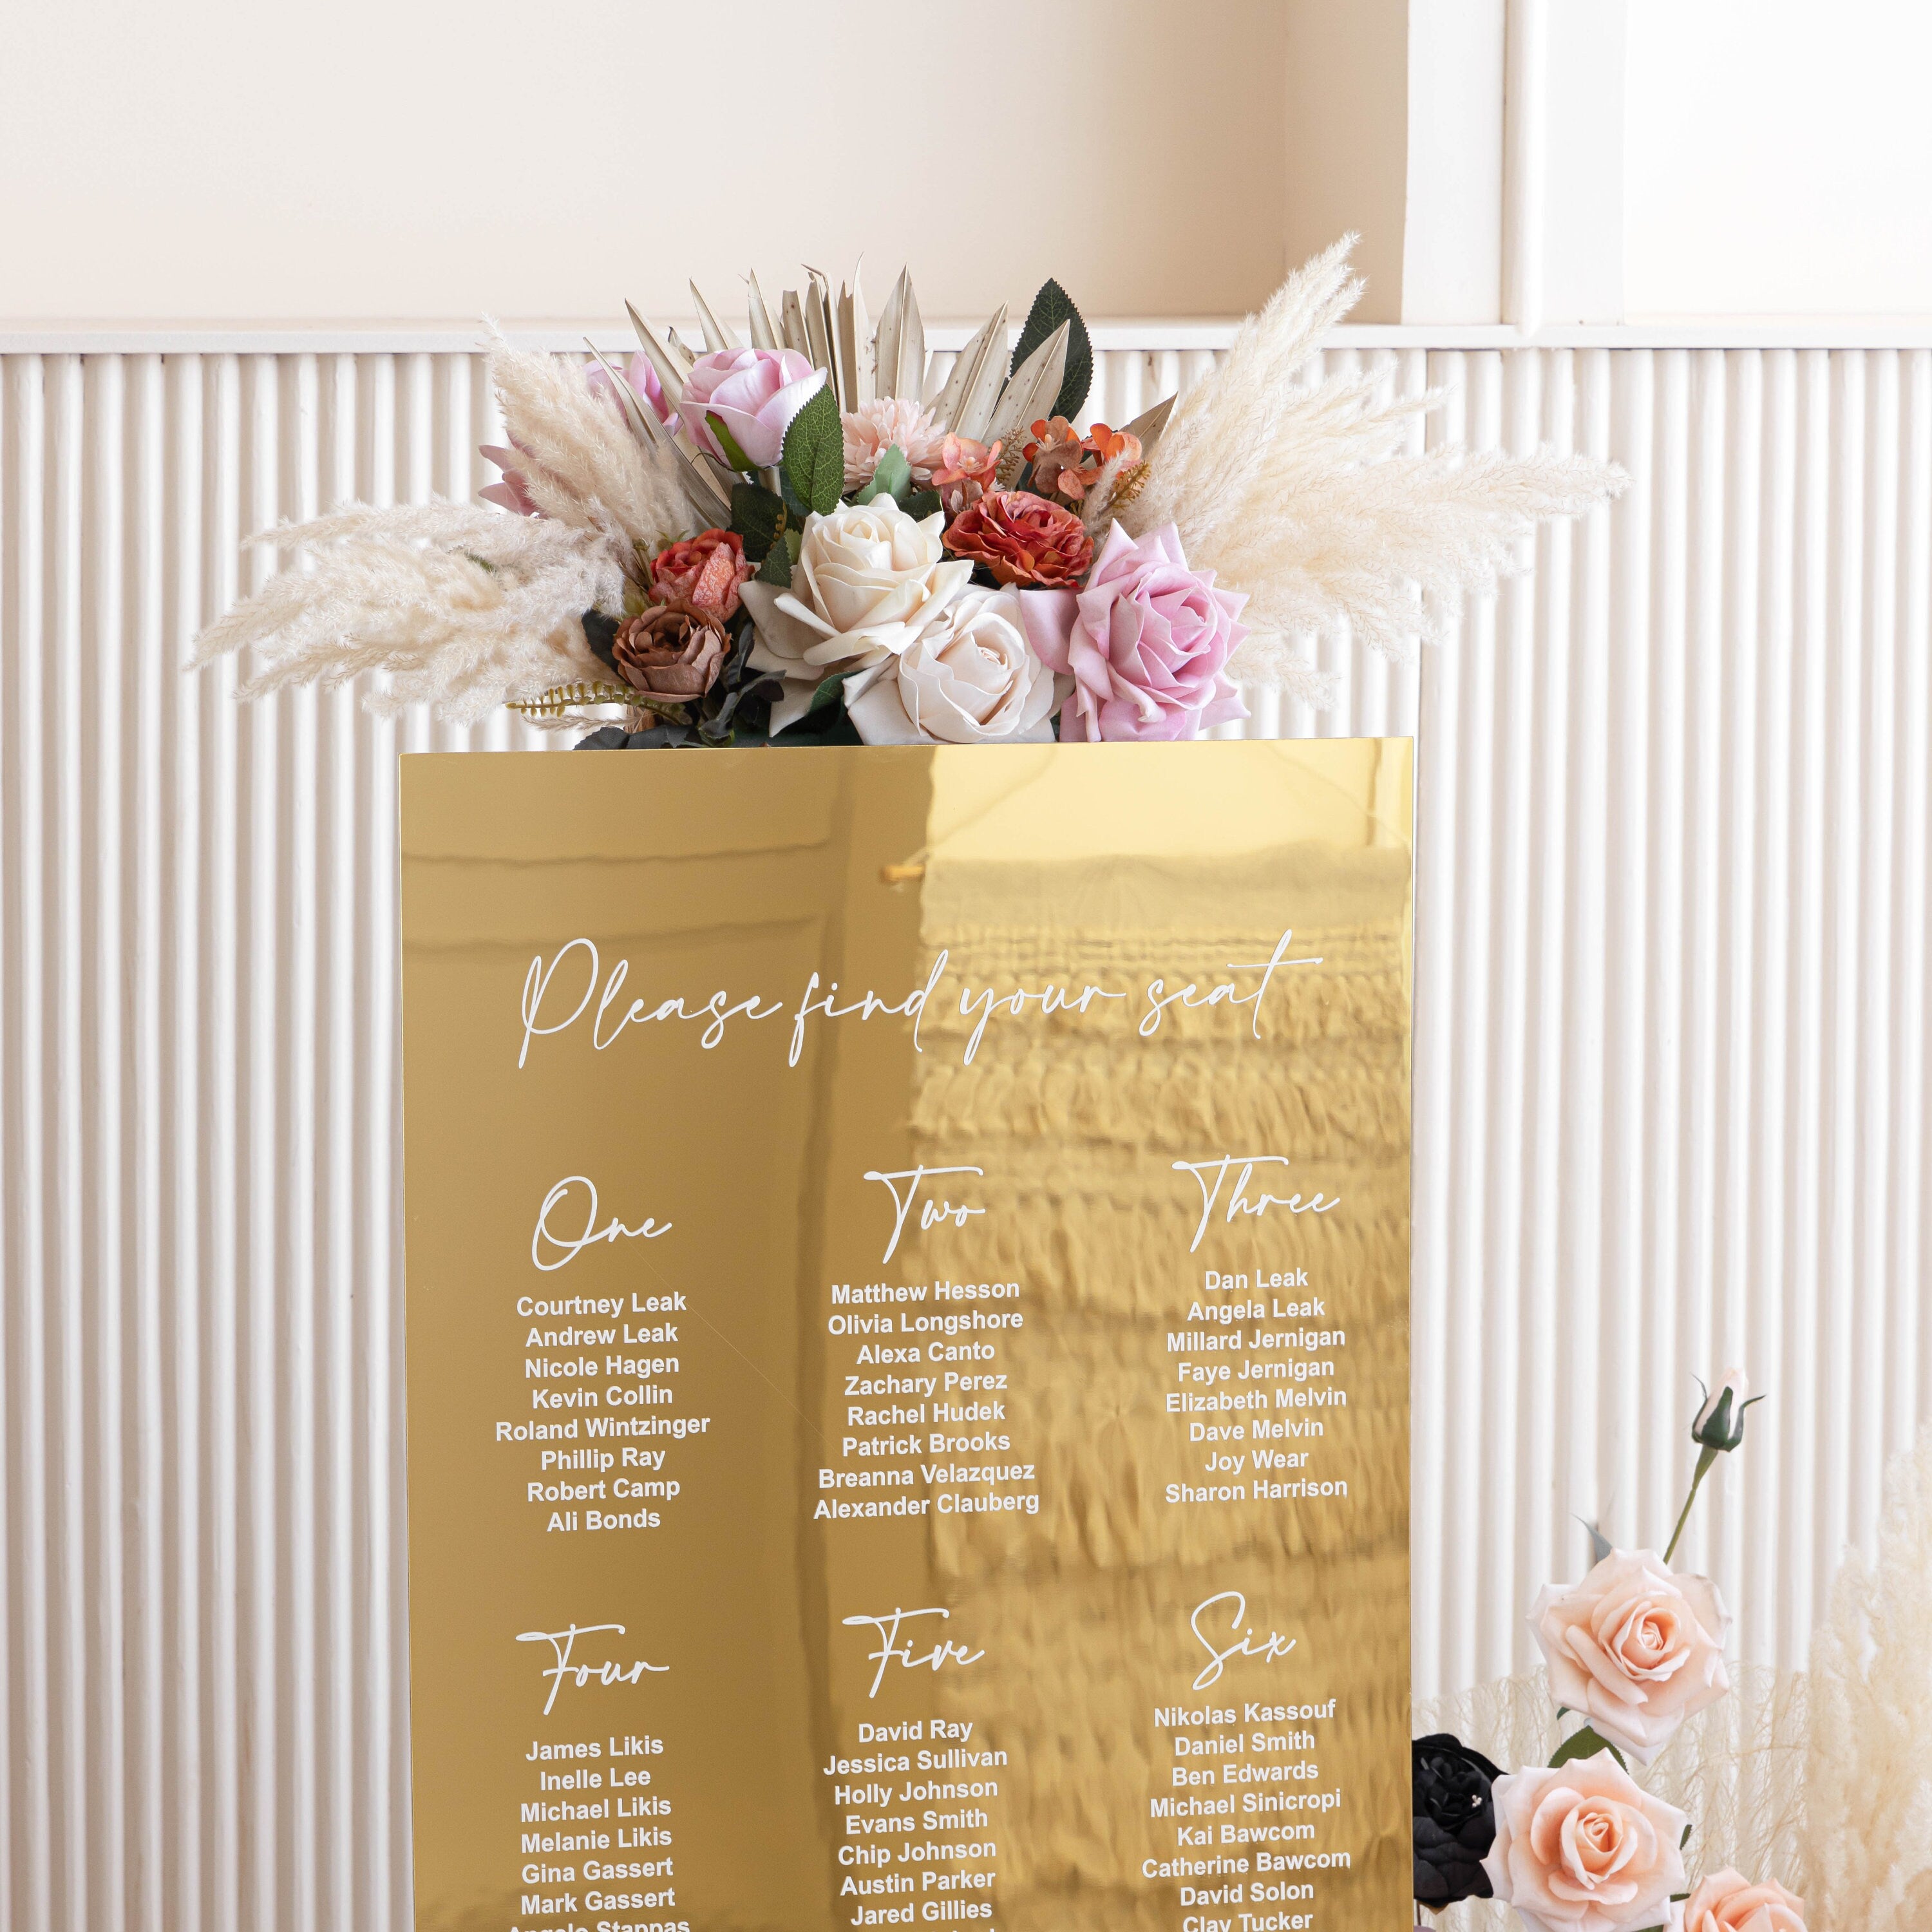 Wedding Bundle - Set of 3 Wedding Signs - Seating Chart - Wedding Seating Plan - Reception Signage - Gold Acrylic Wedding Signage